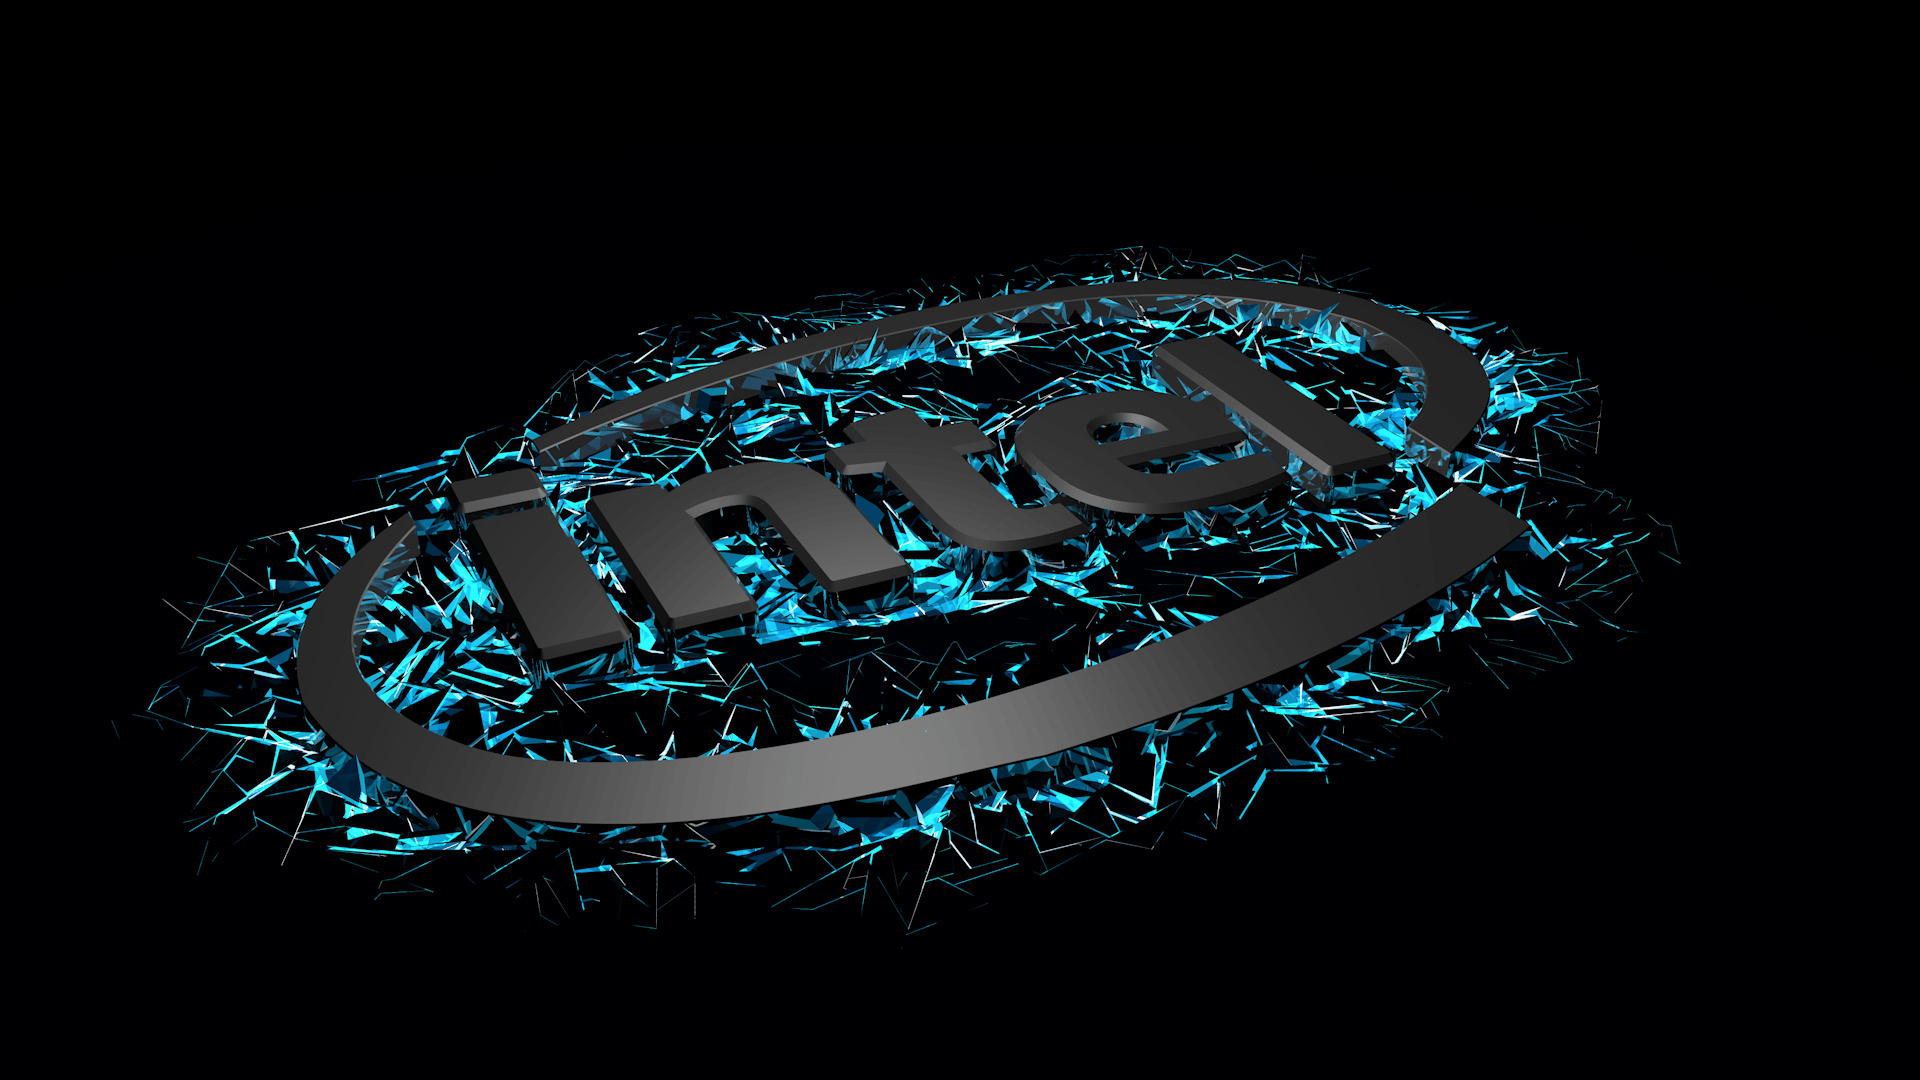 Intel, Intel Wallpapers, Intel Logo, Intel Technology, 1920x1080 Full HD Desktop